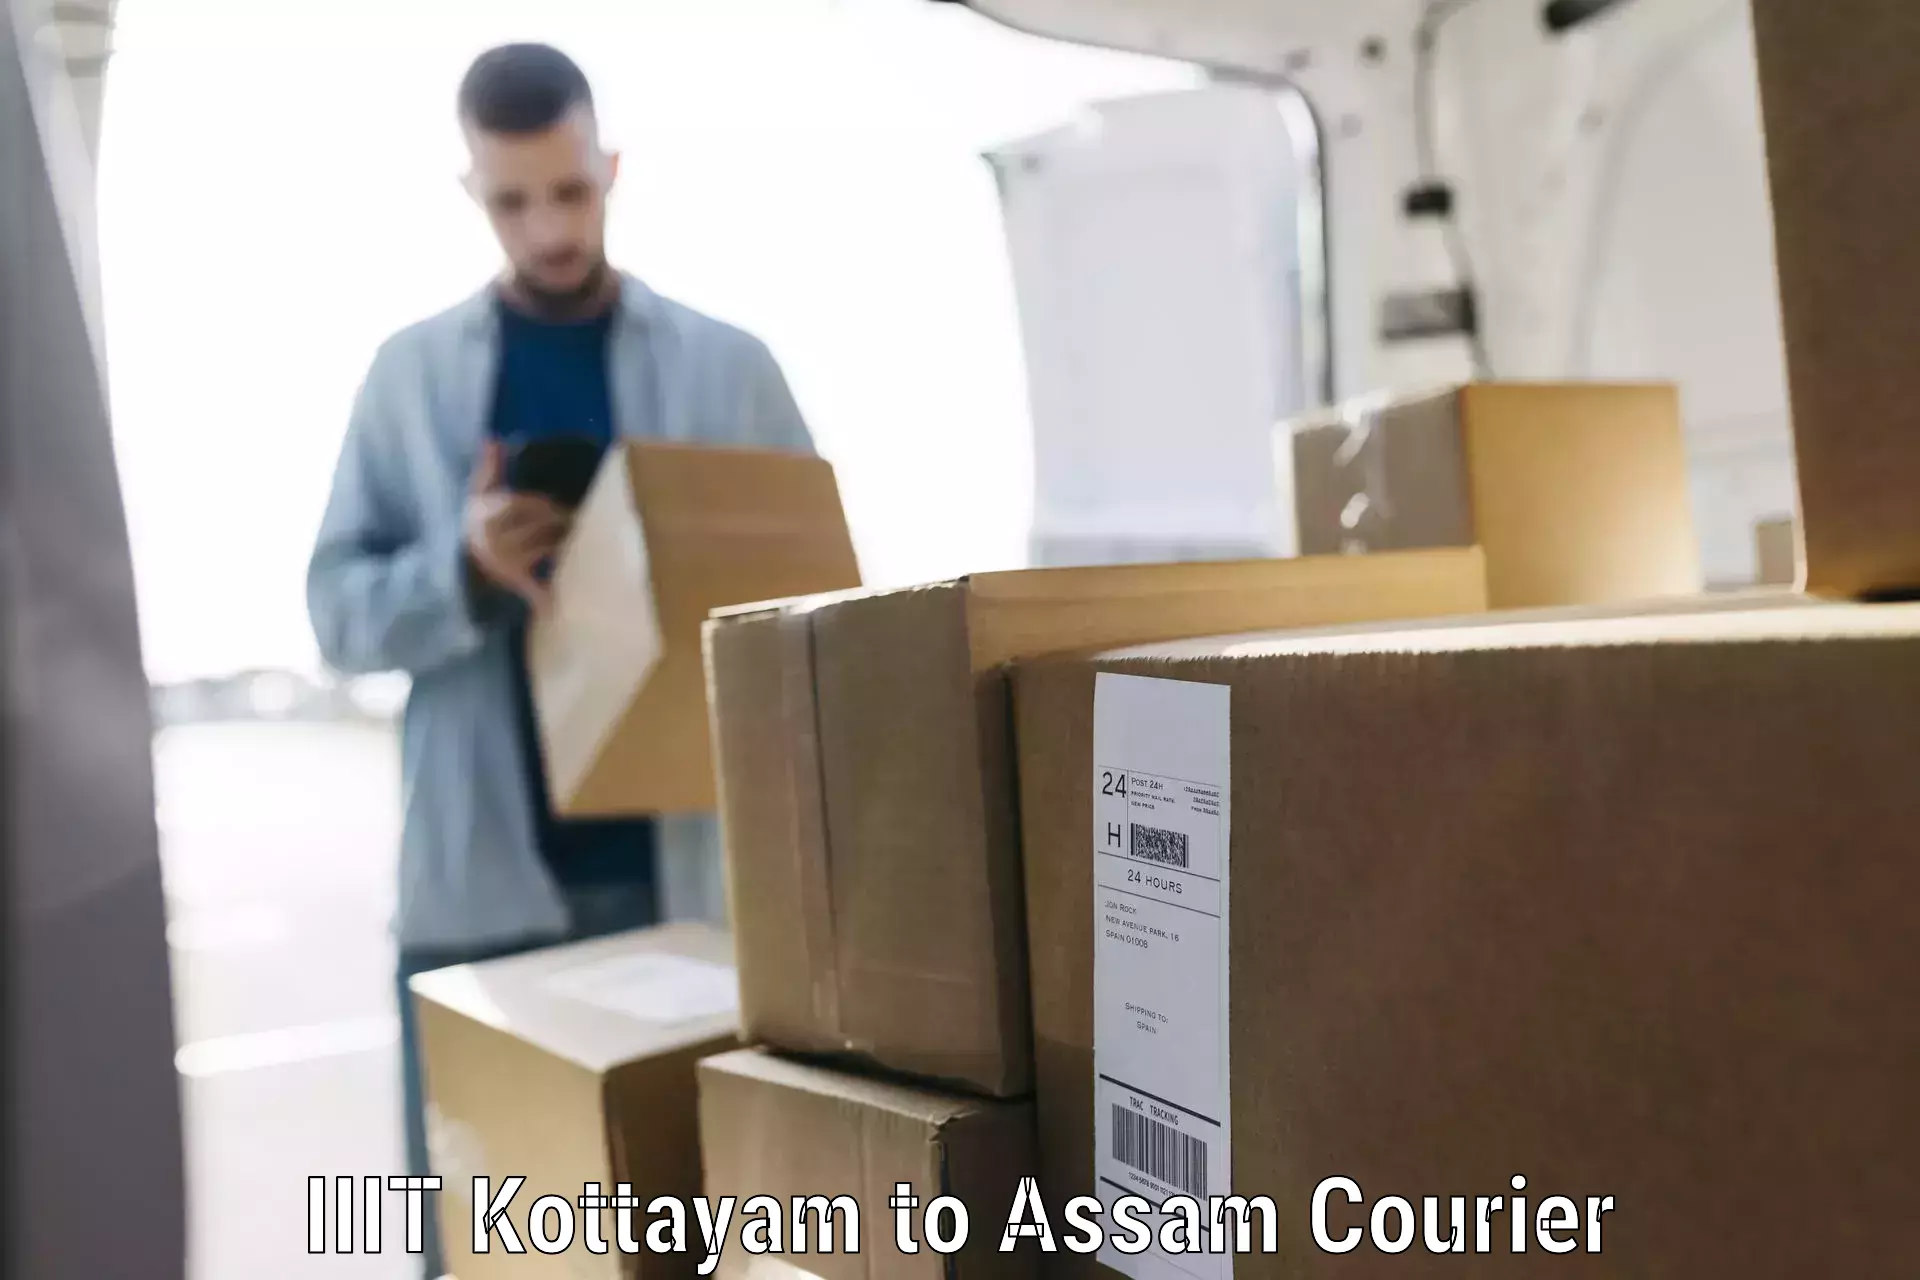 Luggage shipment specialists IIIT Kottayam to Bokajan